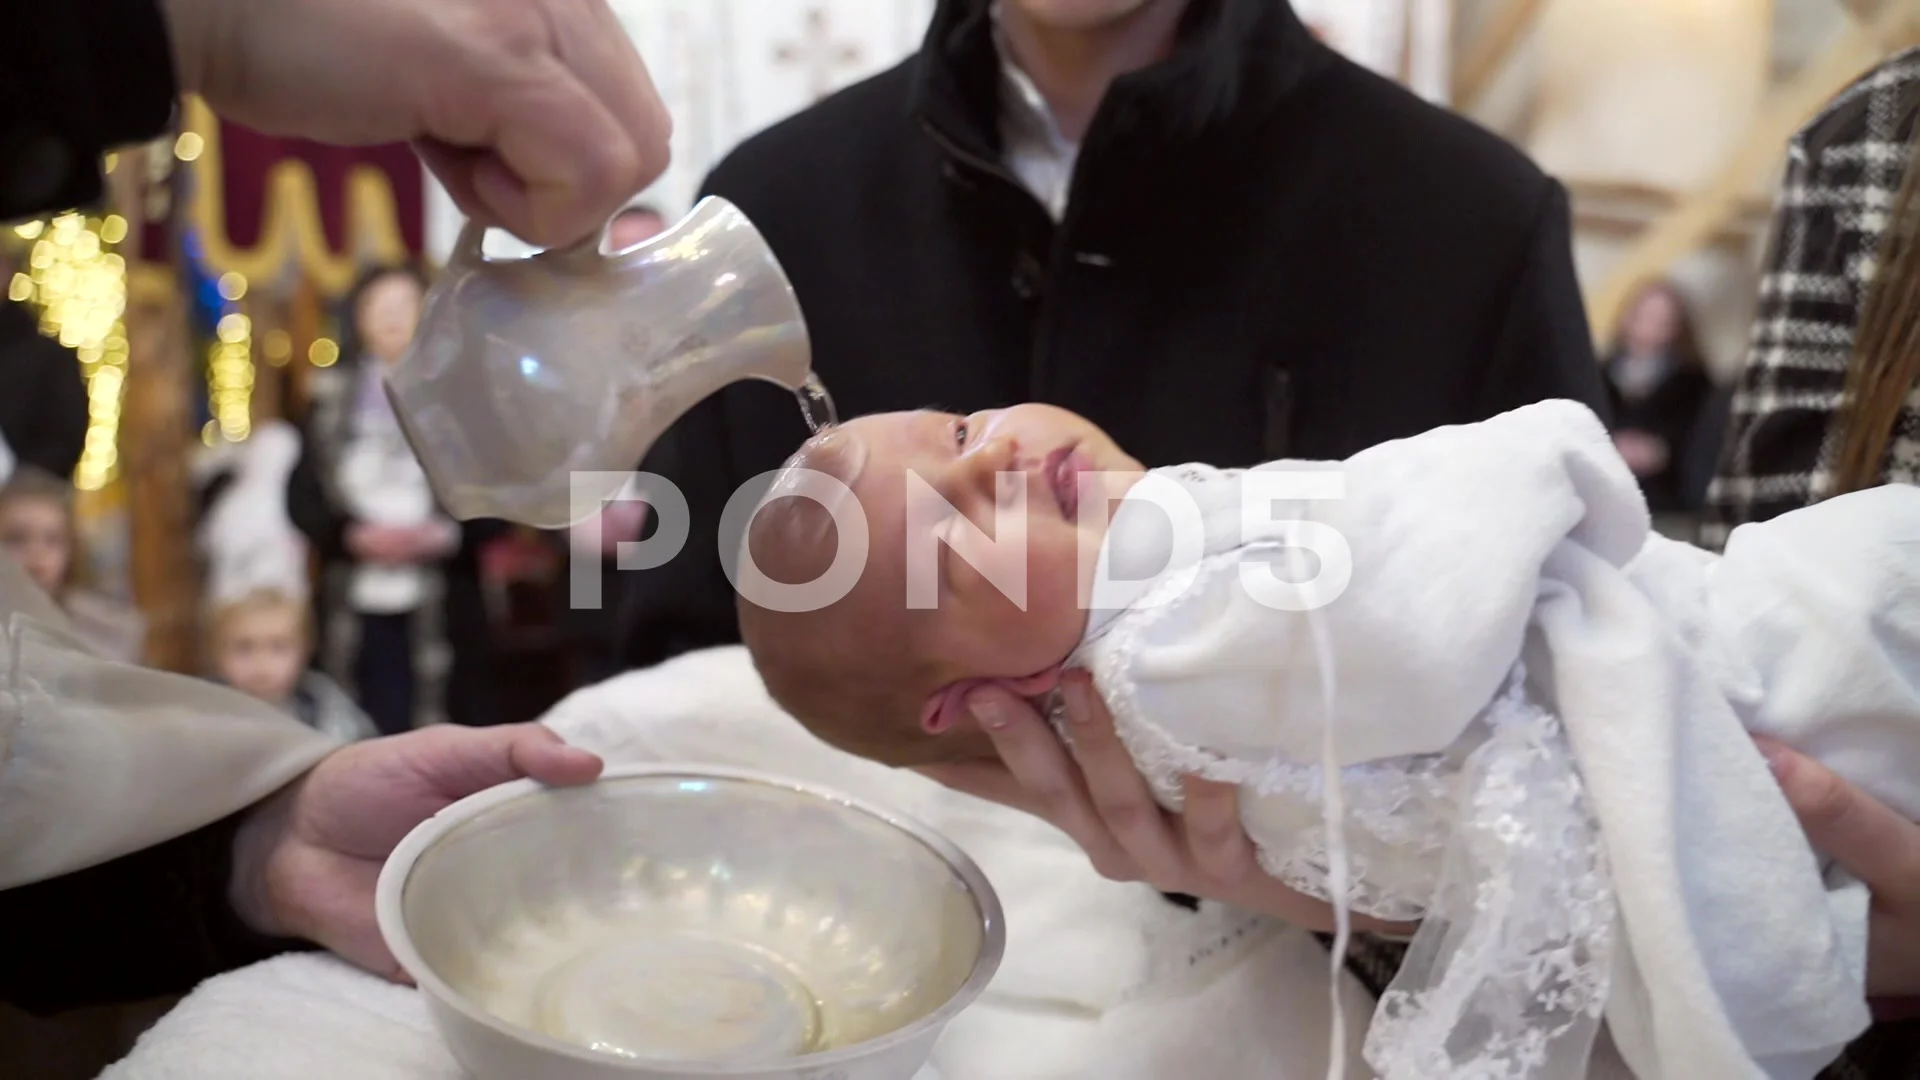 catholic baby baptism